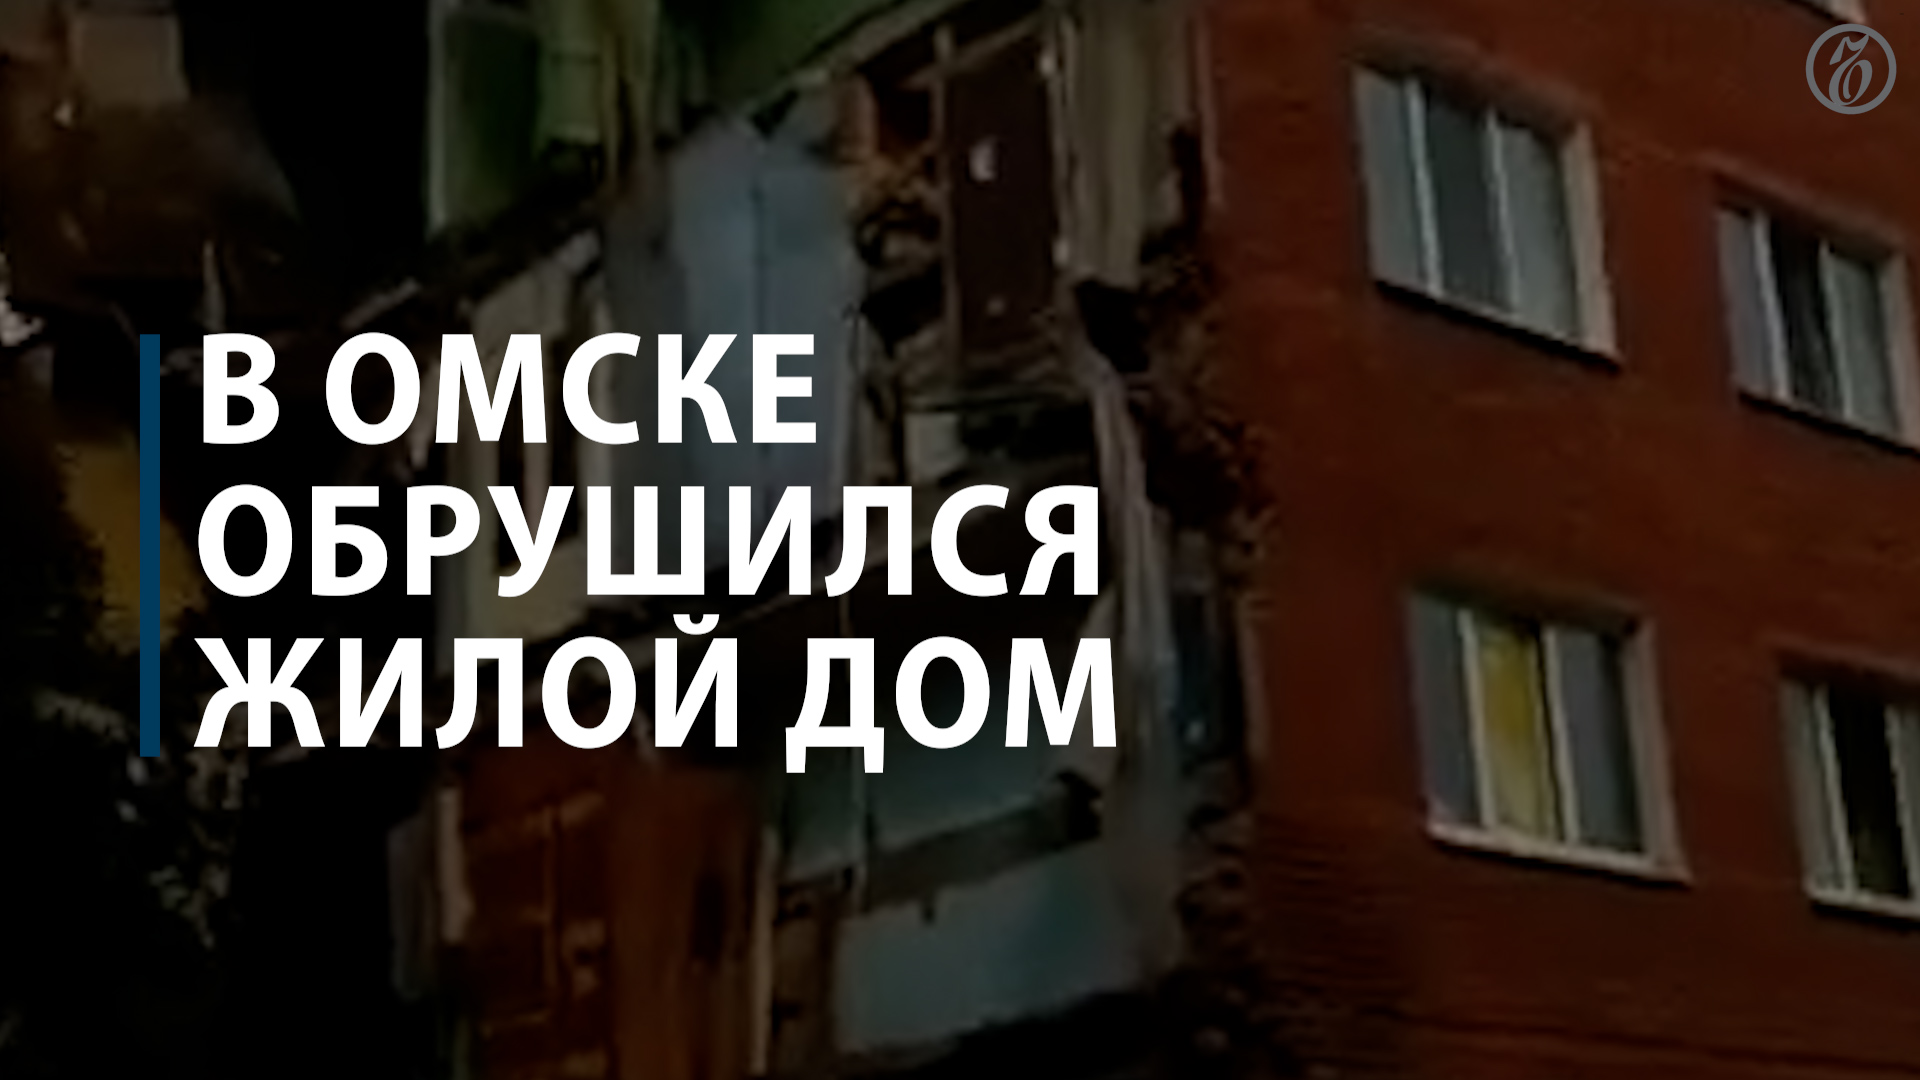 В Омске обрушился жилой дом